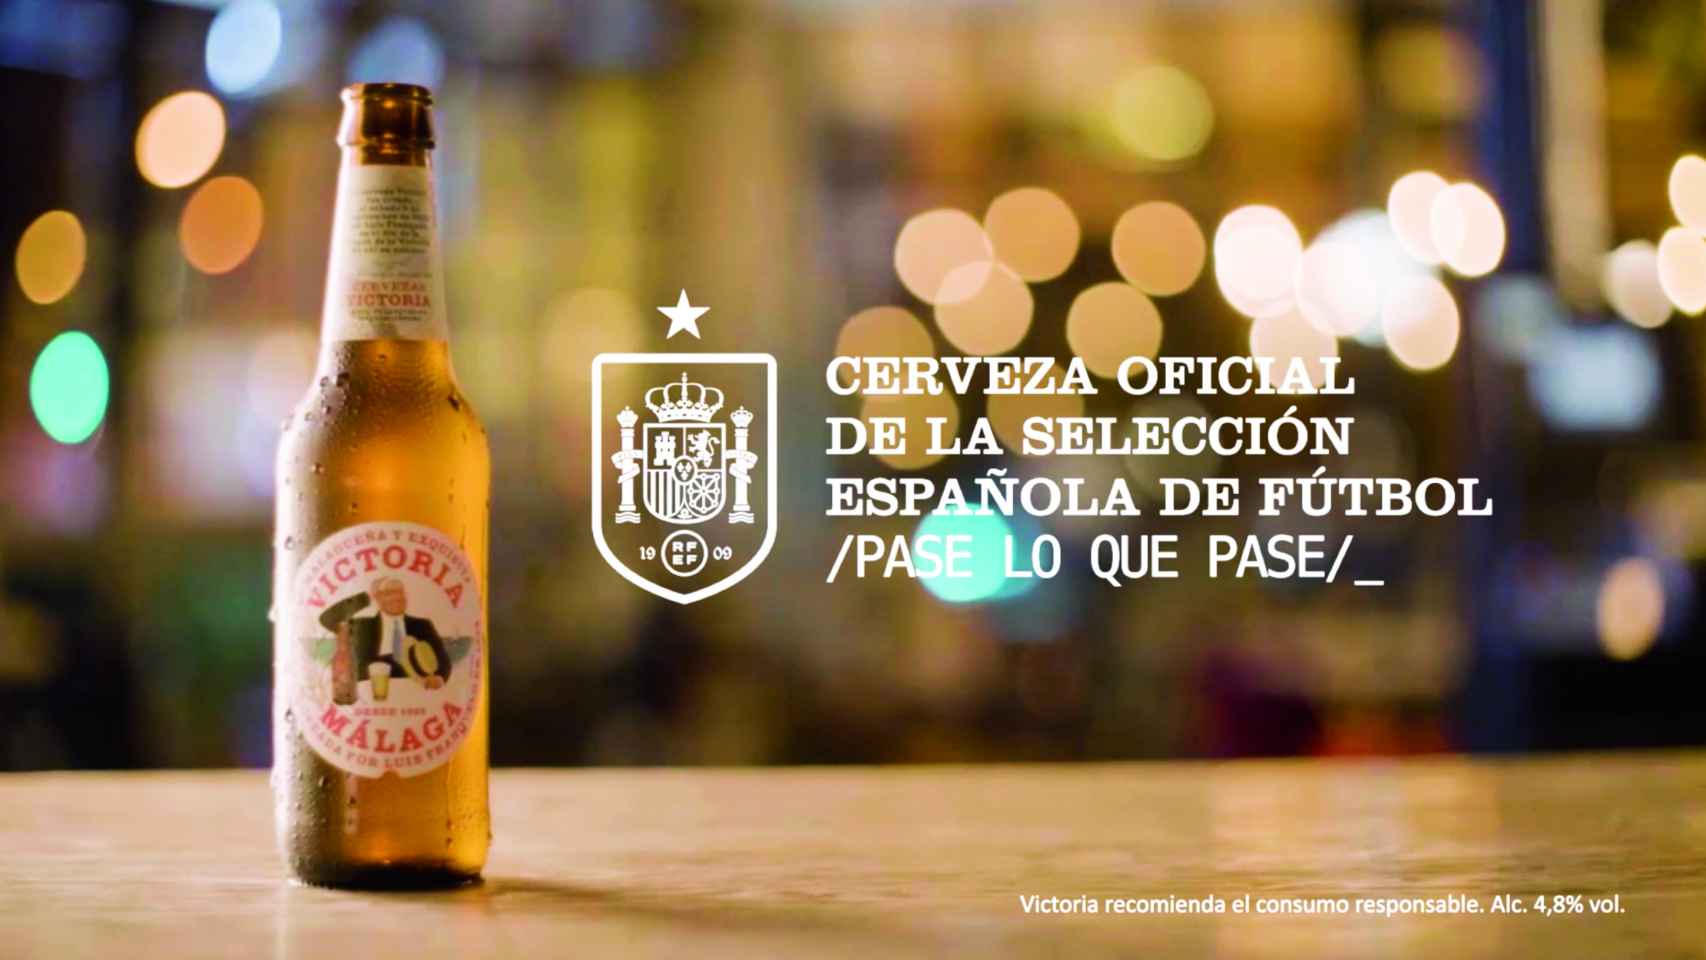 Cervezas Victoria crea un anuncio para apoyar a España en el mundial con un discurso hecho por IA.